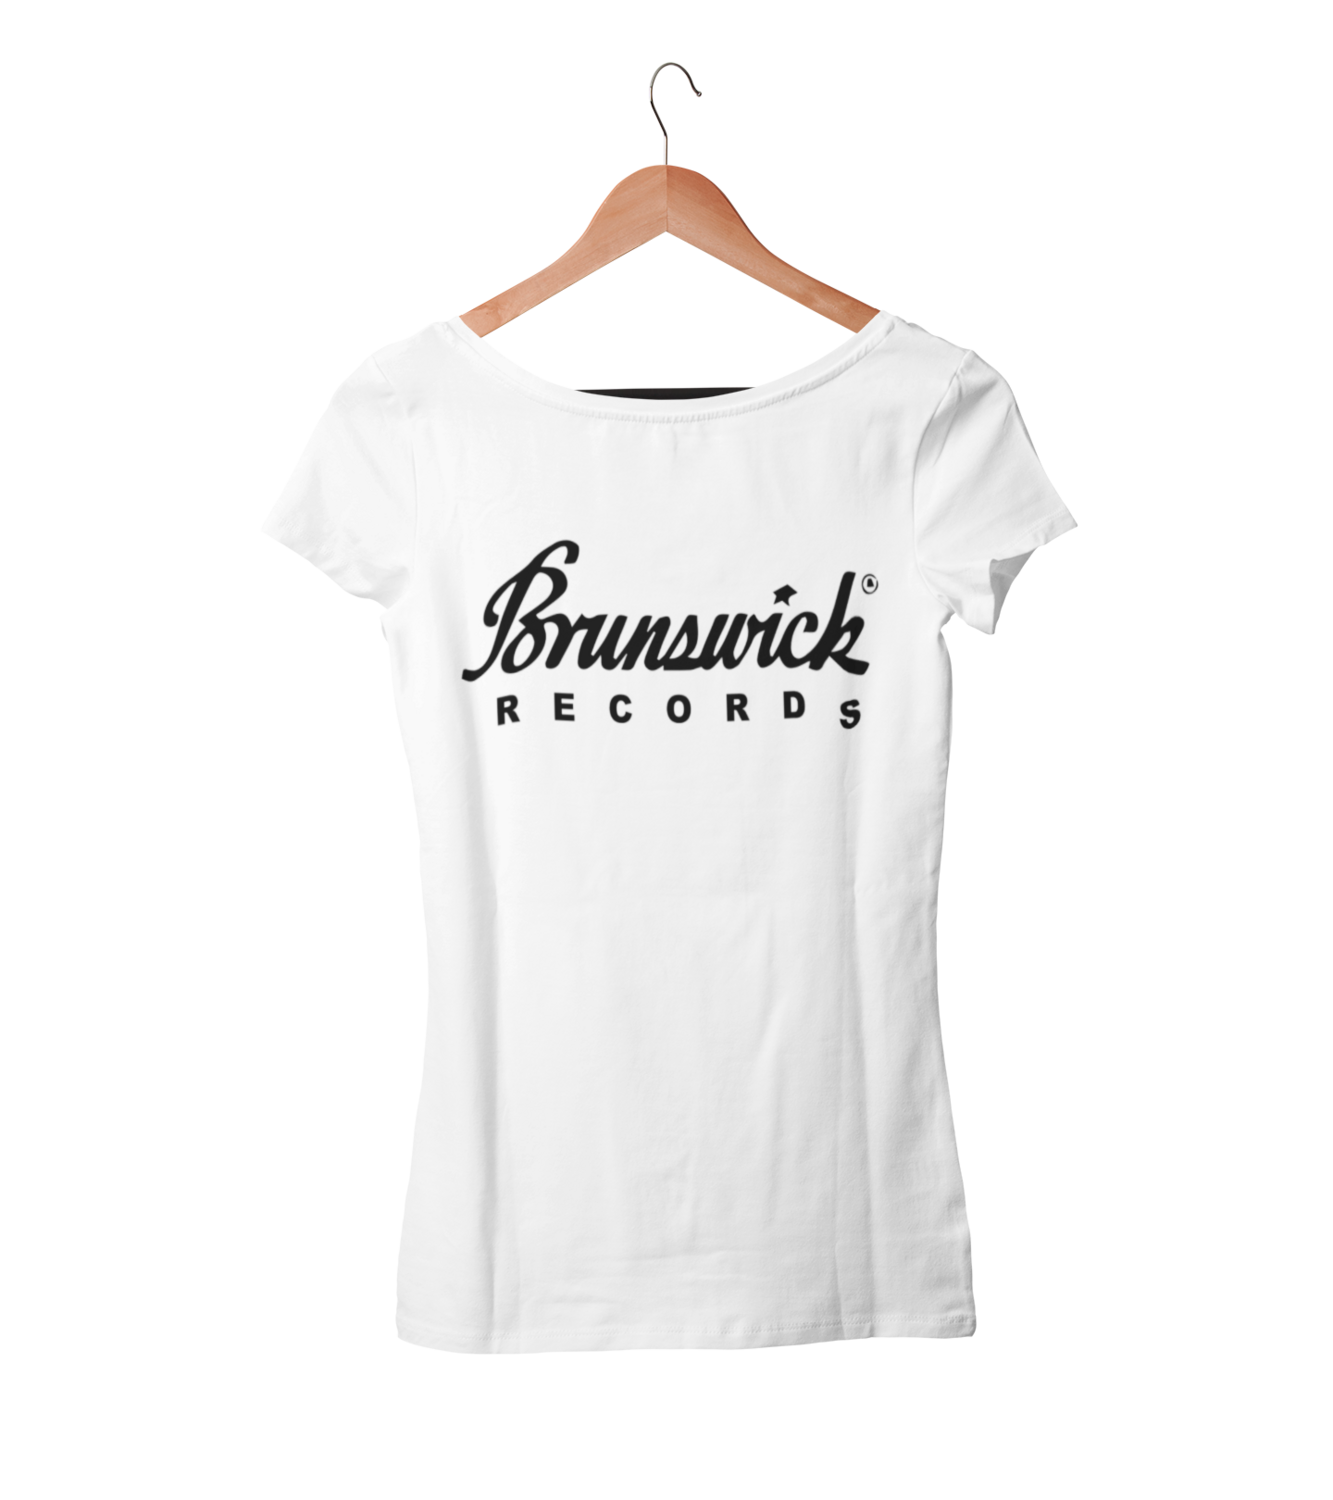 BRUNSWICK RECORDS T-SHIRT WOMAN